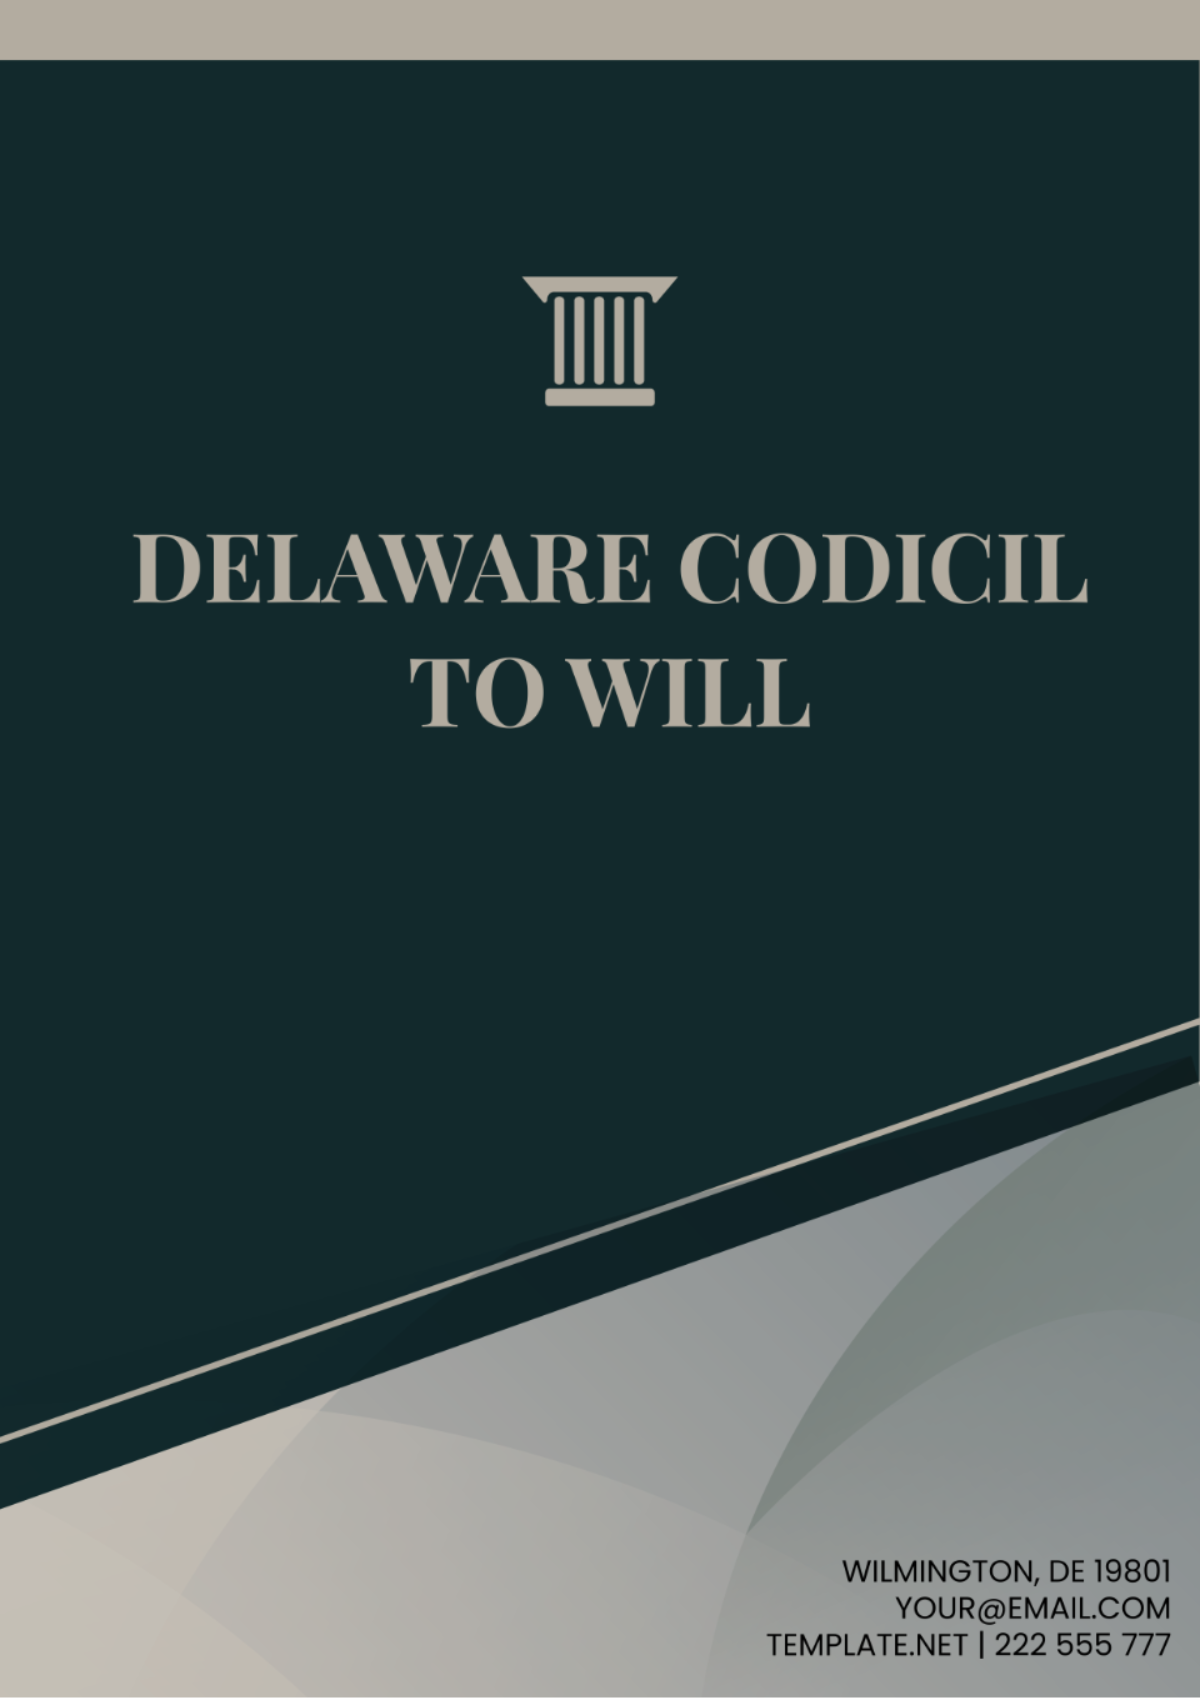 Delaware Codicil to Will Template